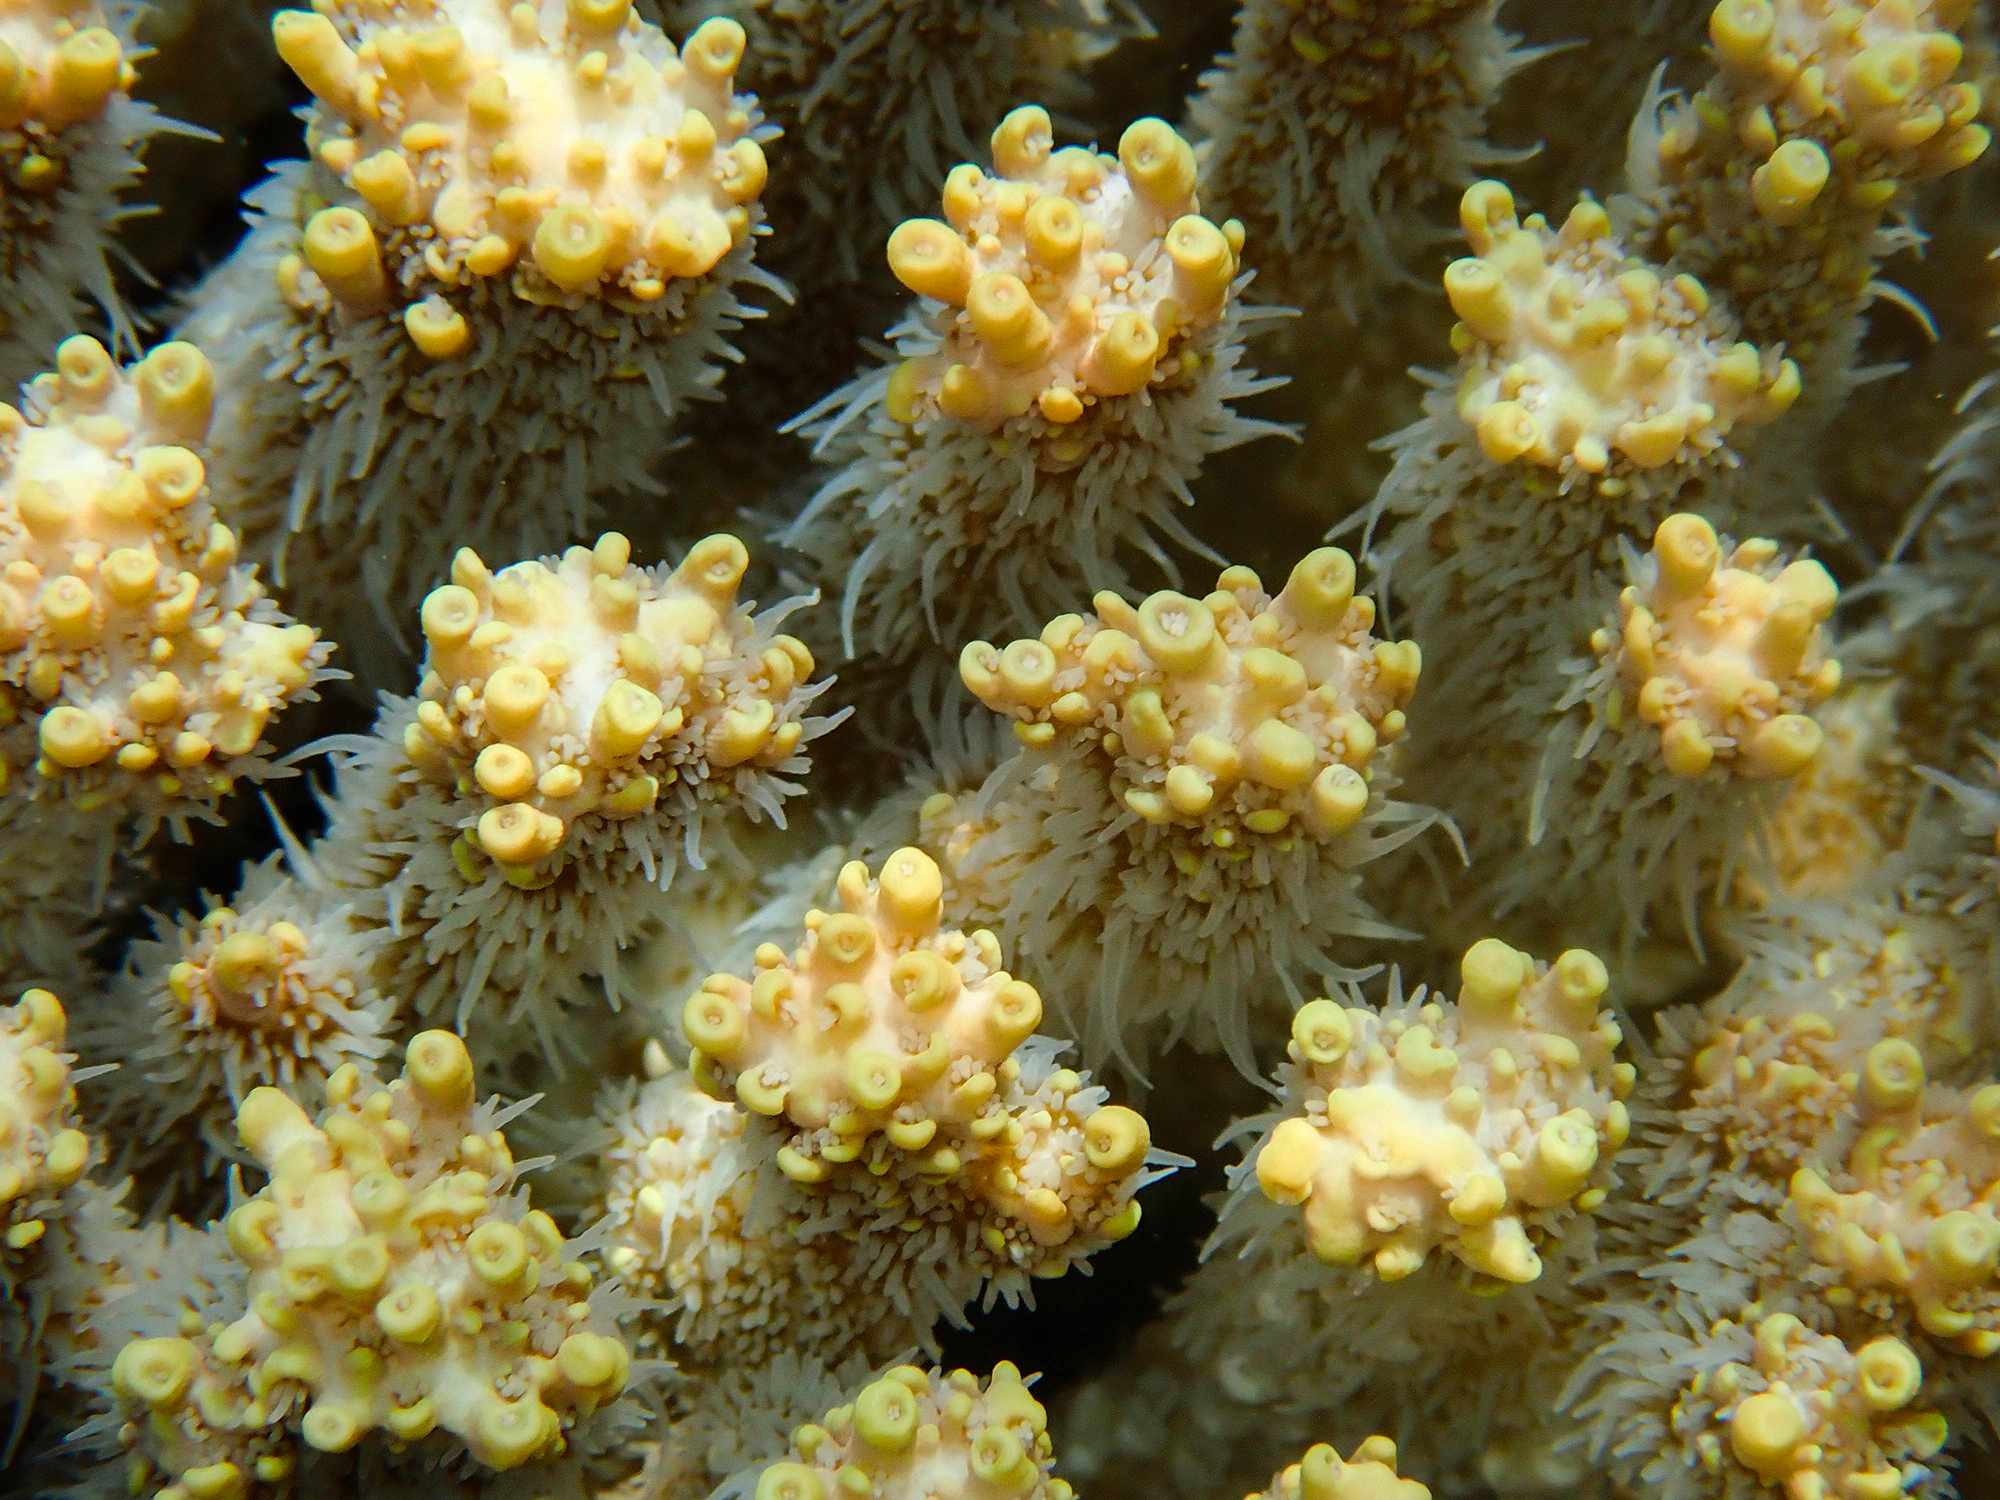 Coral macro